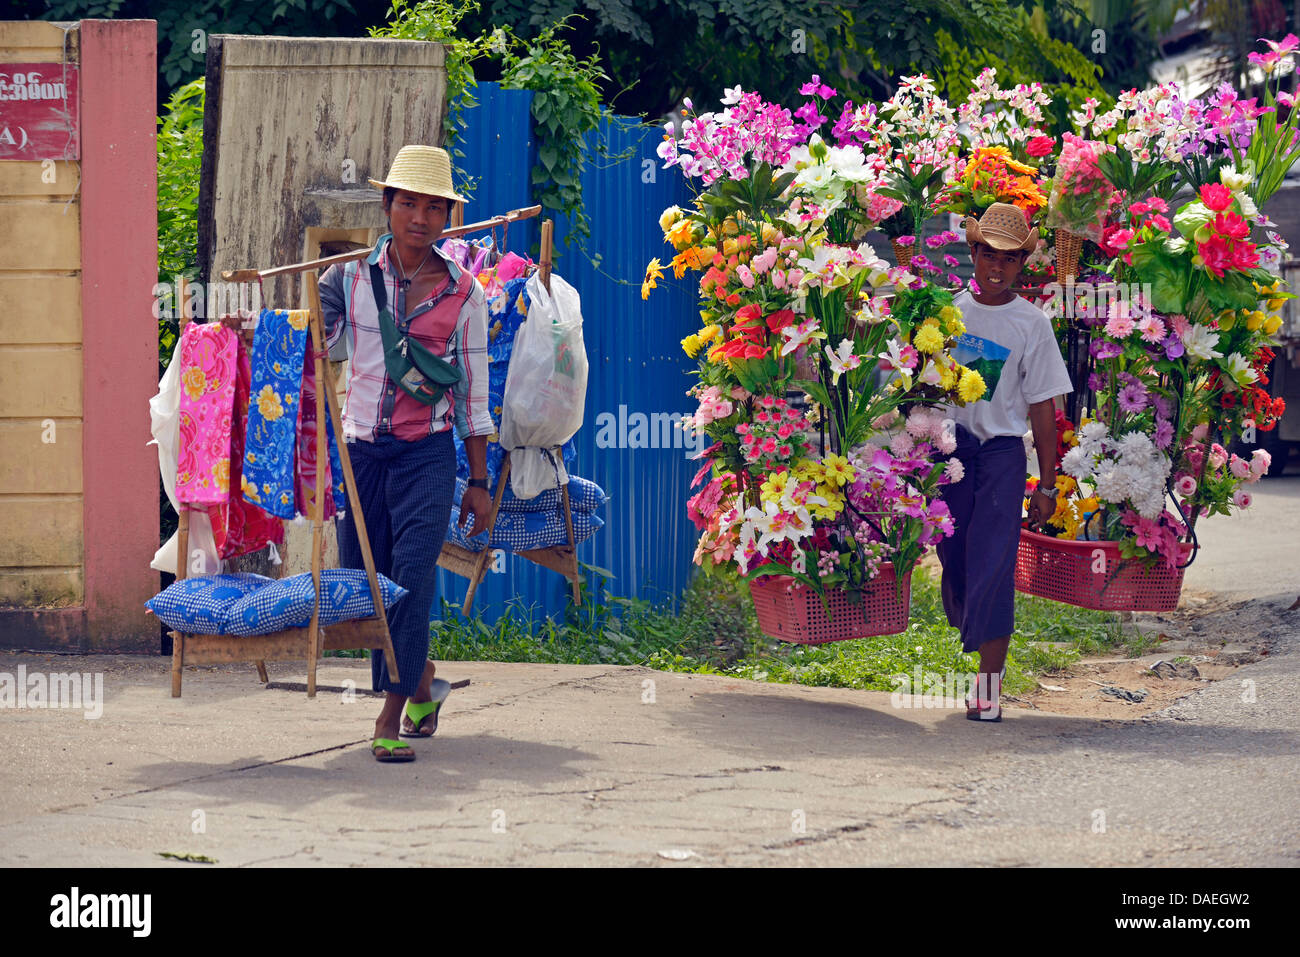 Los jóvenes vendedores ambulantes vendiendo flores de plástico y telas, Birmania, Rangún Foto de stock